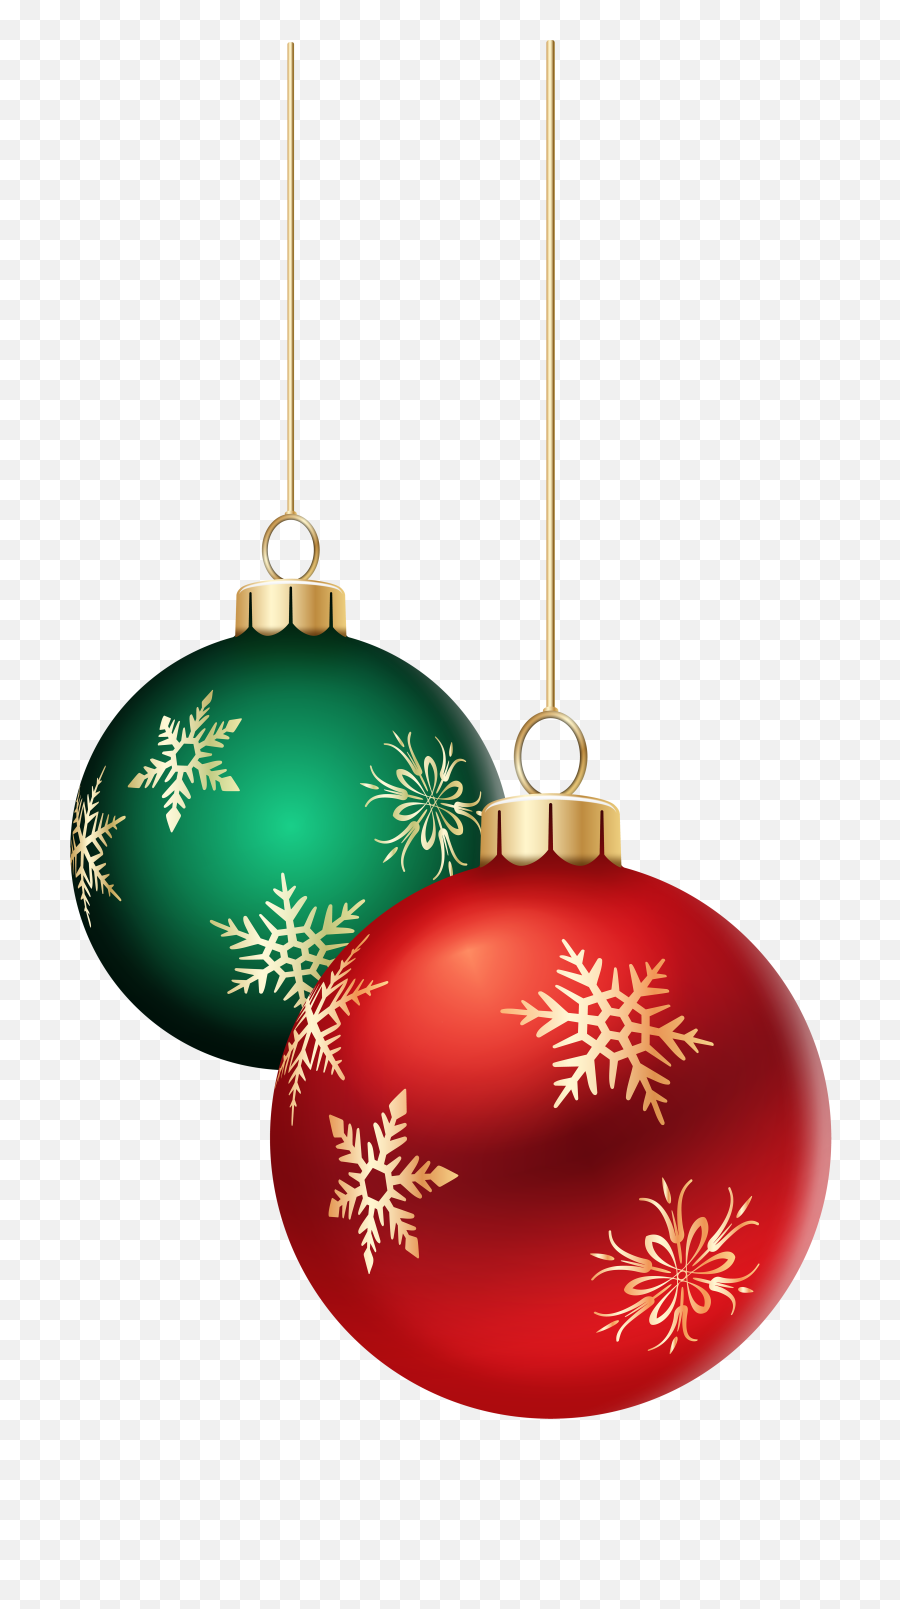 Hanging Christmas Ball Png File - Christmas Tree Balls Png,Christmas Ball Png